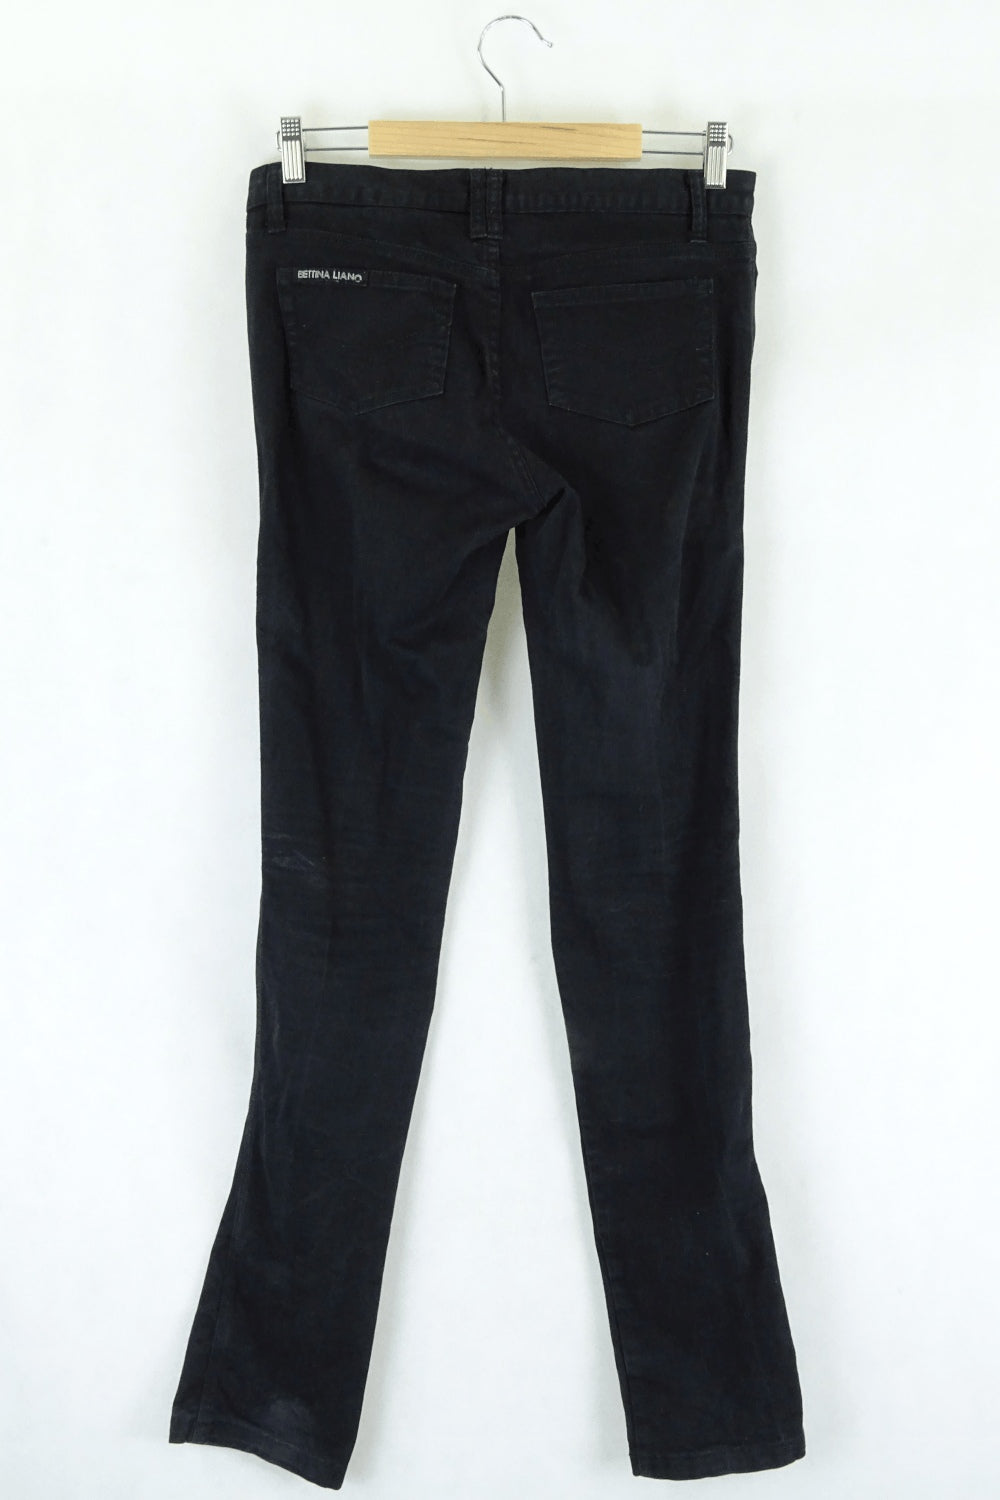 Bettina Liano Black Straight Jeans 10